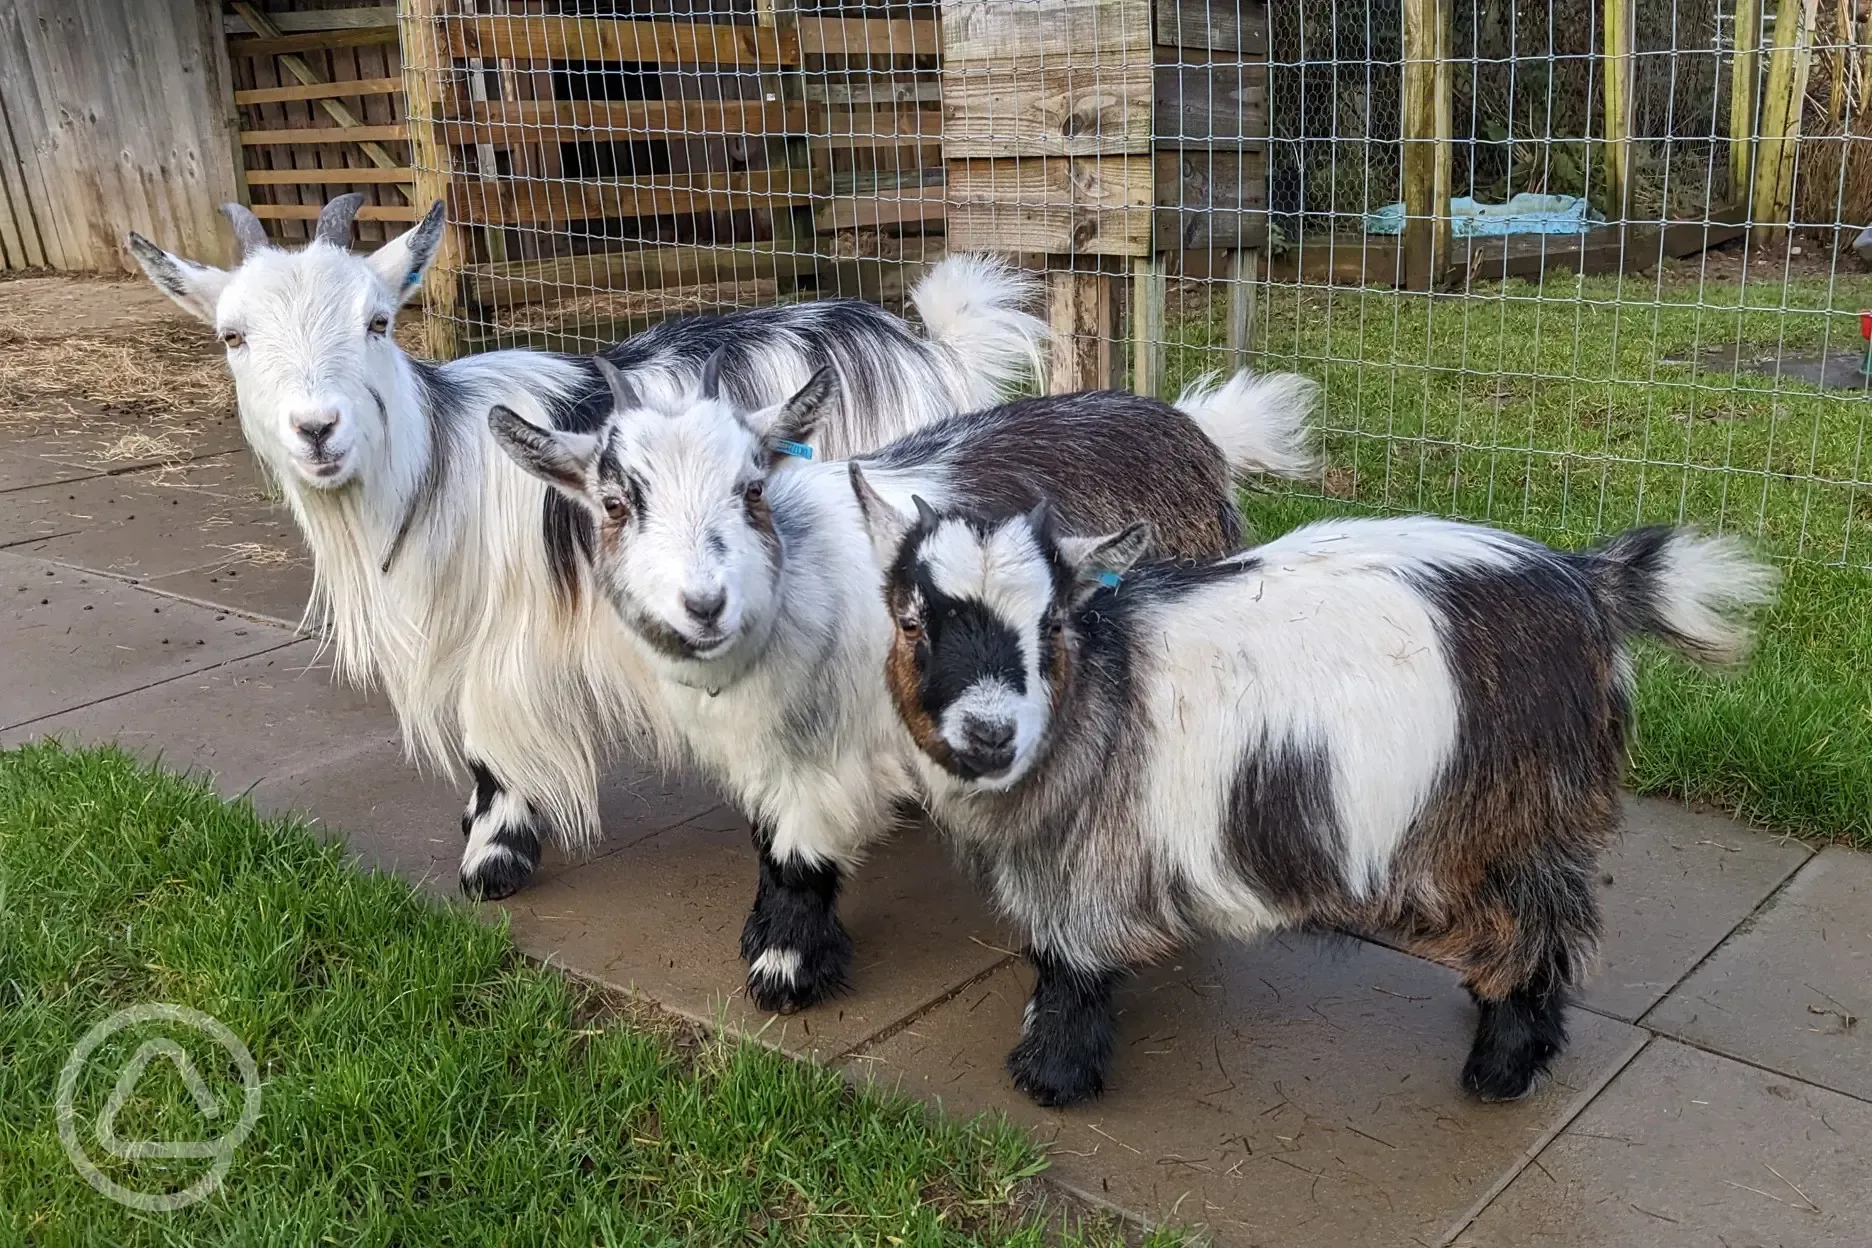 Pygmy goats